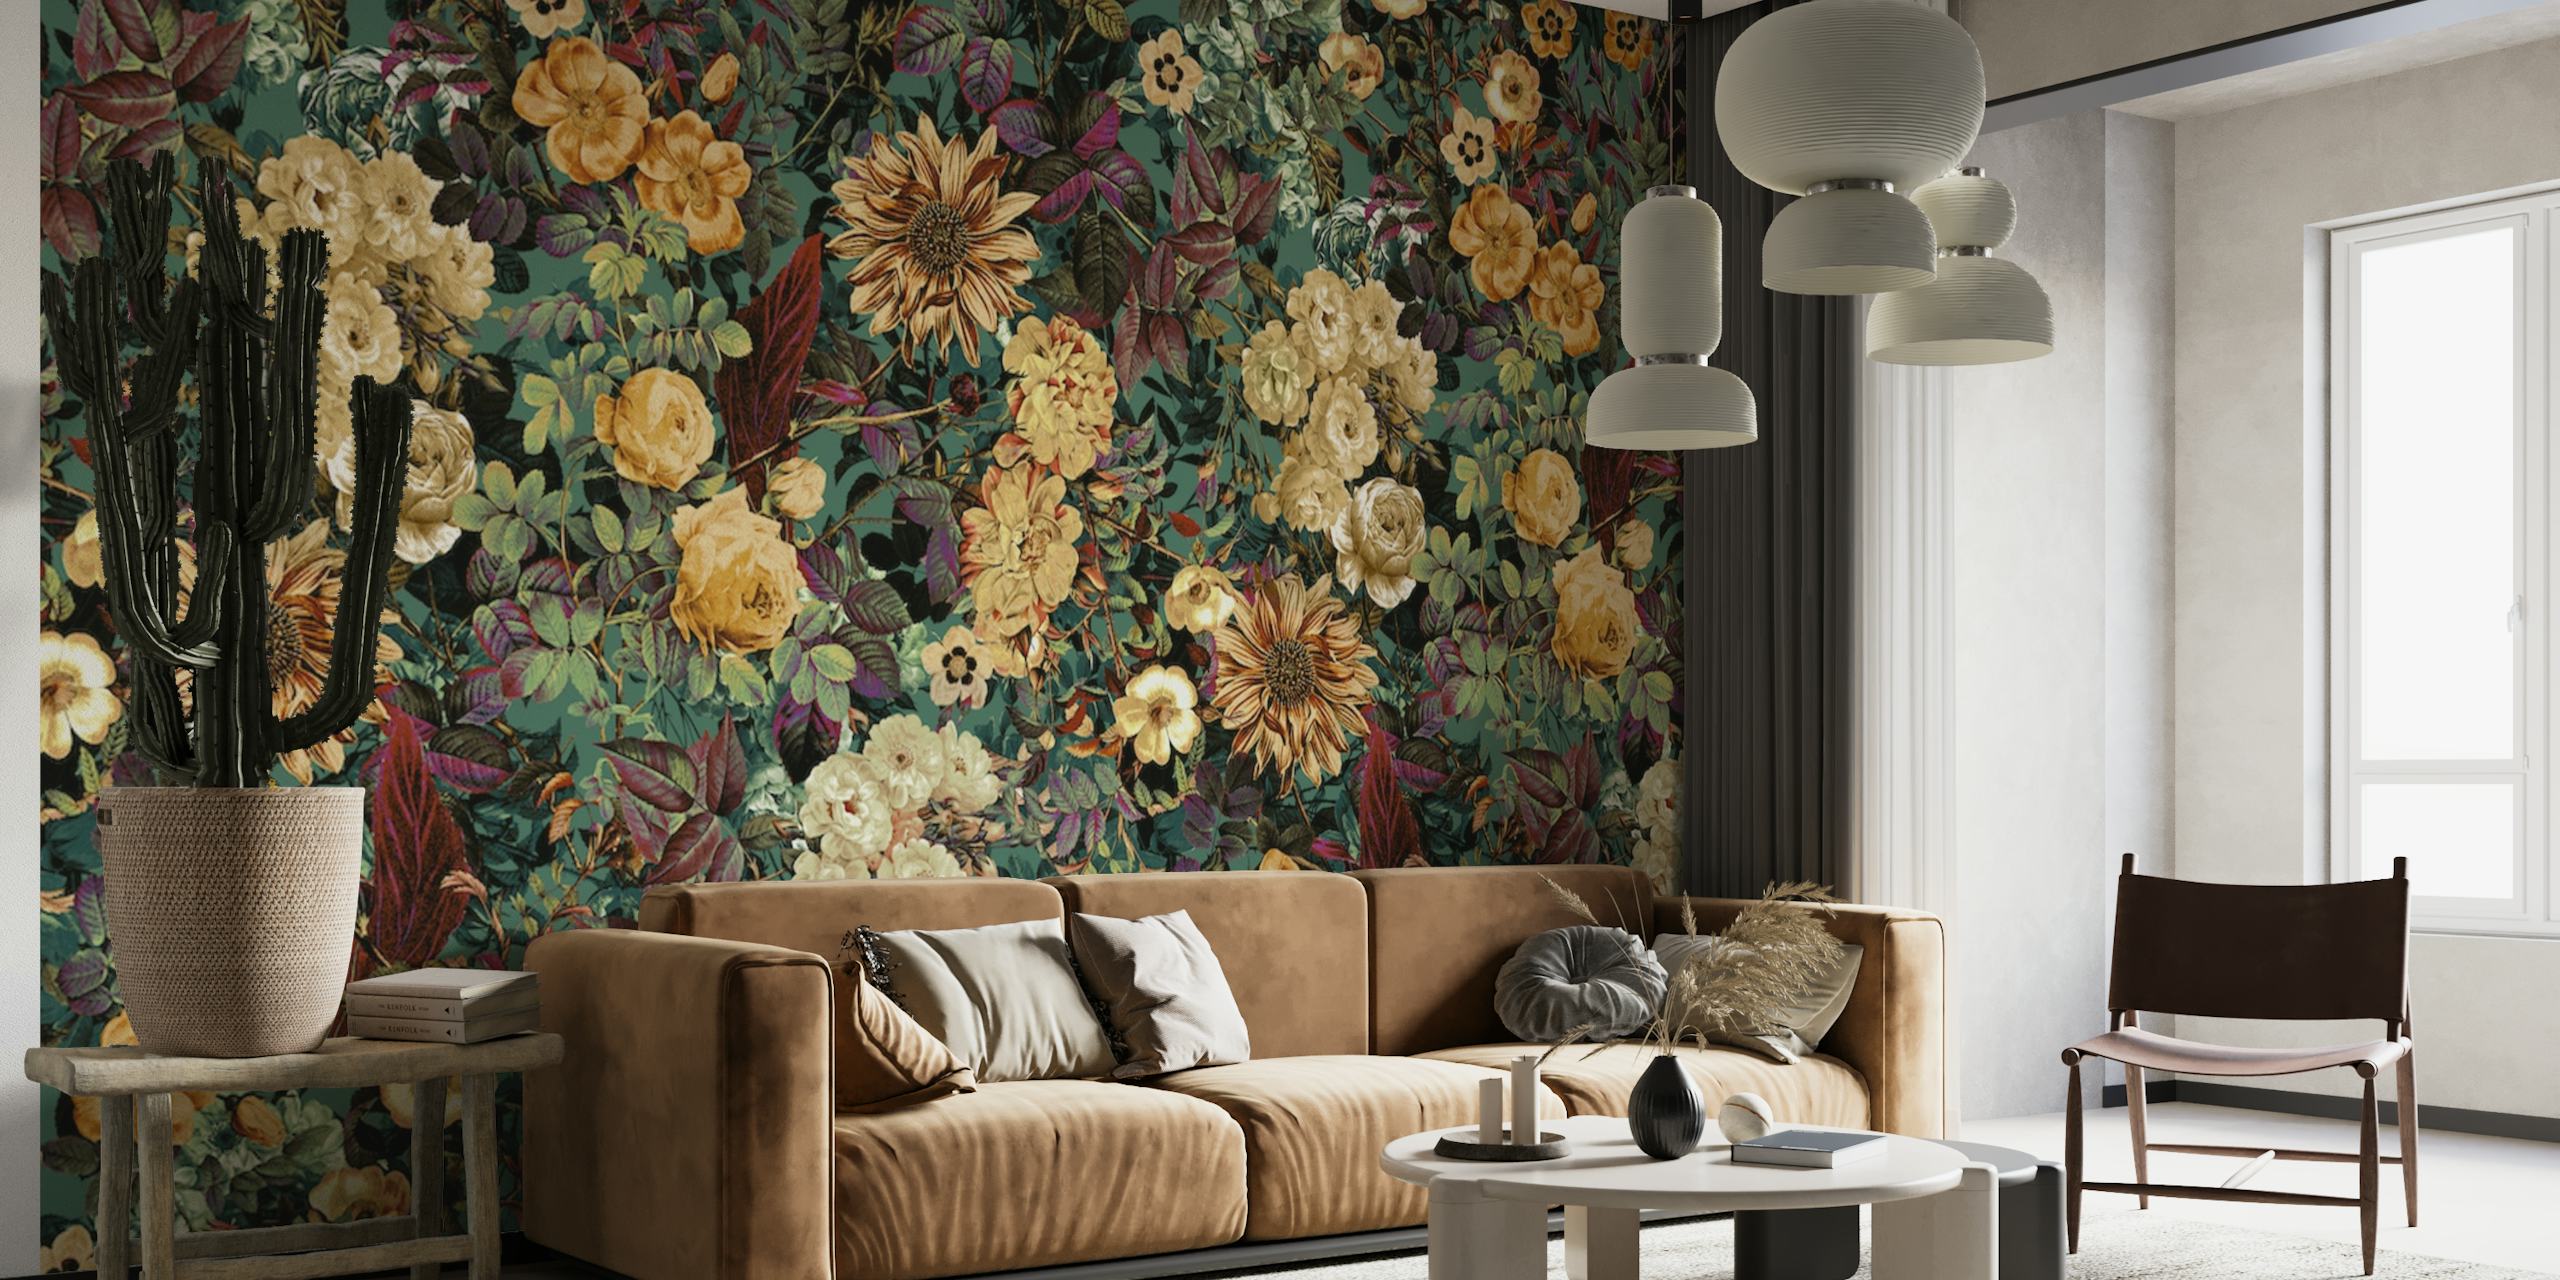 Cvjetni zidni mural 'Izolirano cvjetanje' s tamnom pozadinom i mješavinom krem i zlatnog cvijeća.